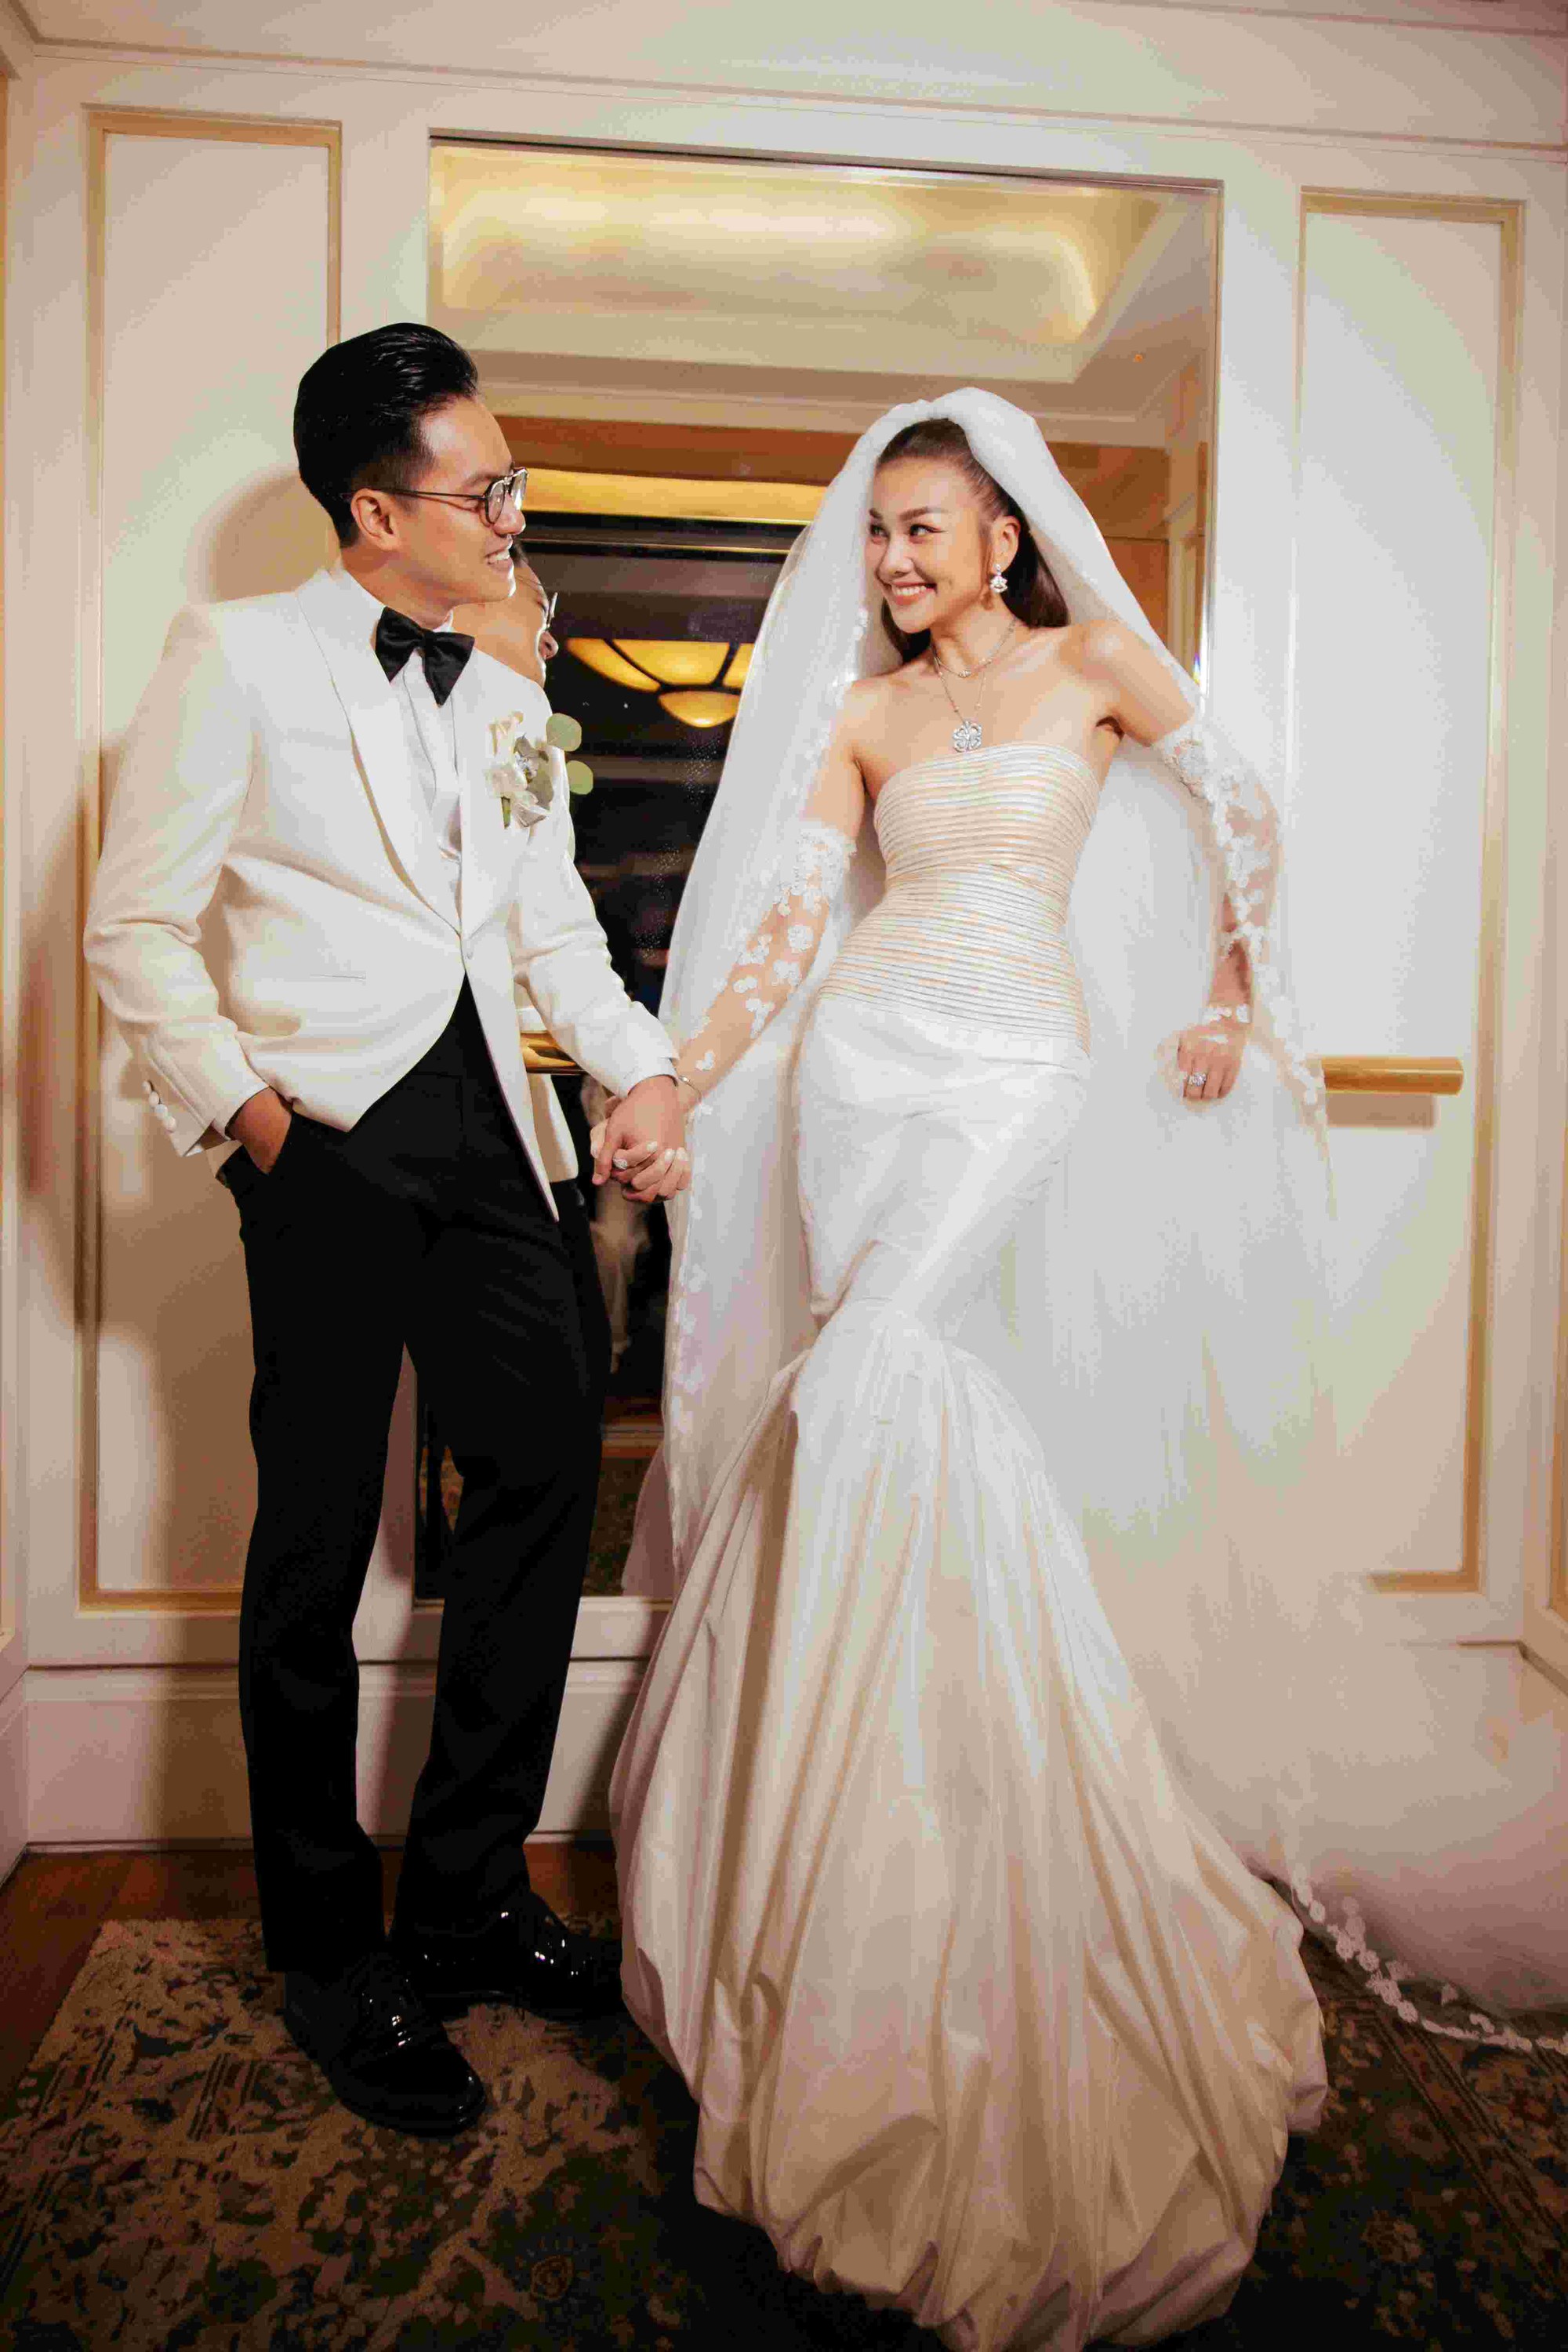 Hot không kém ảnh cưới là khoảnh khắc thử váy của sao Việt - 2sao